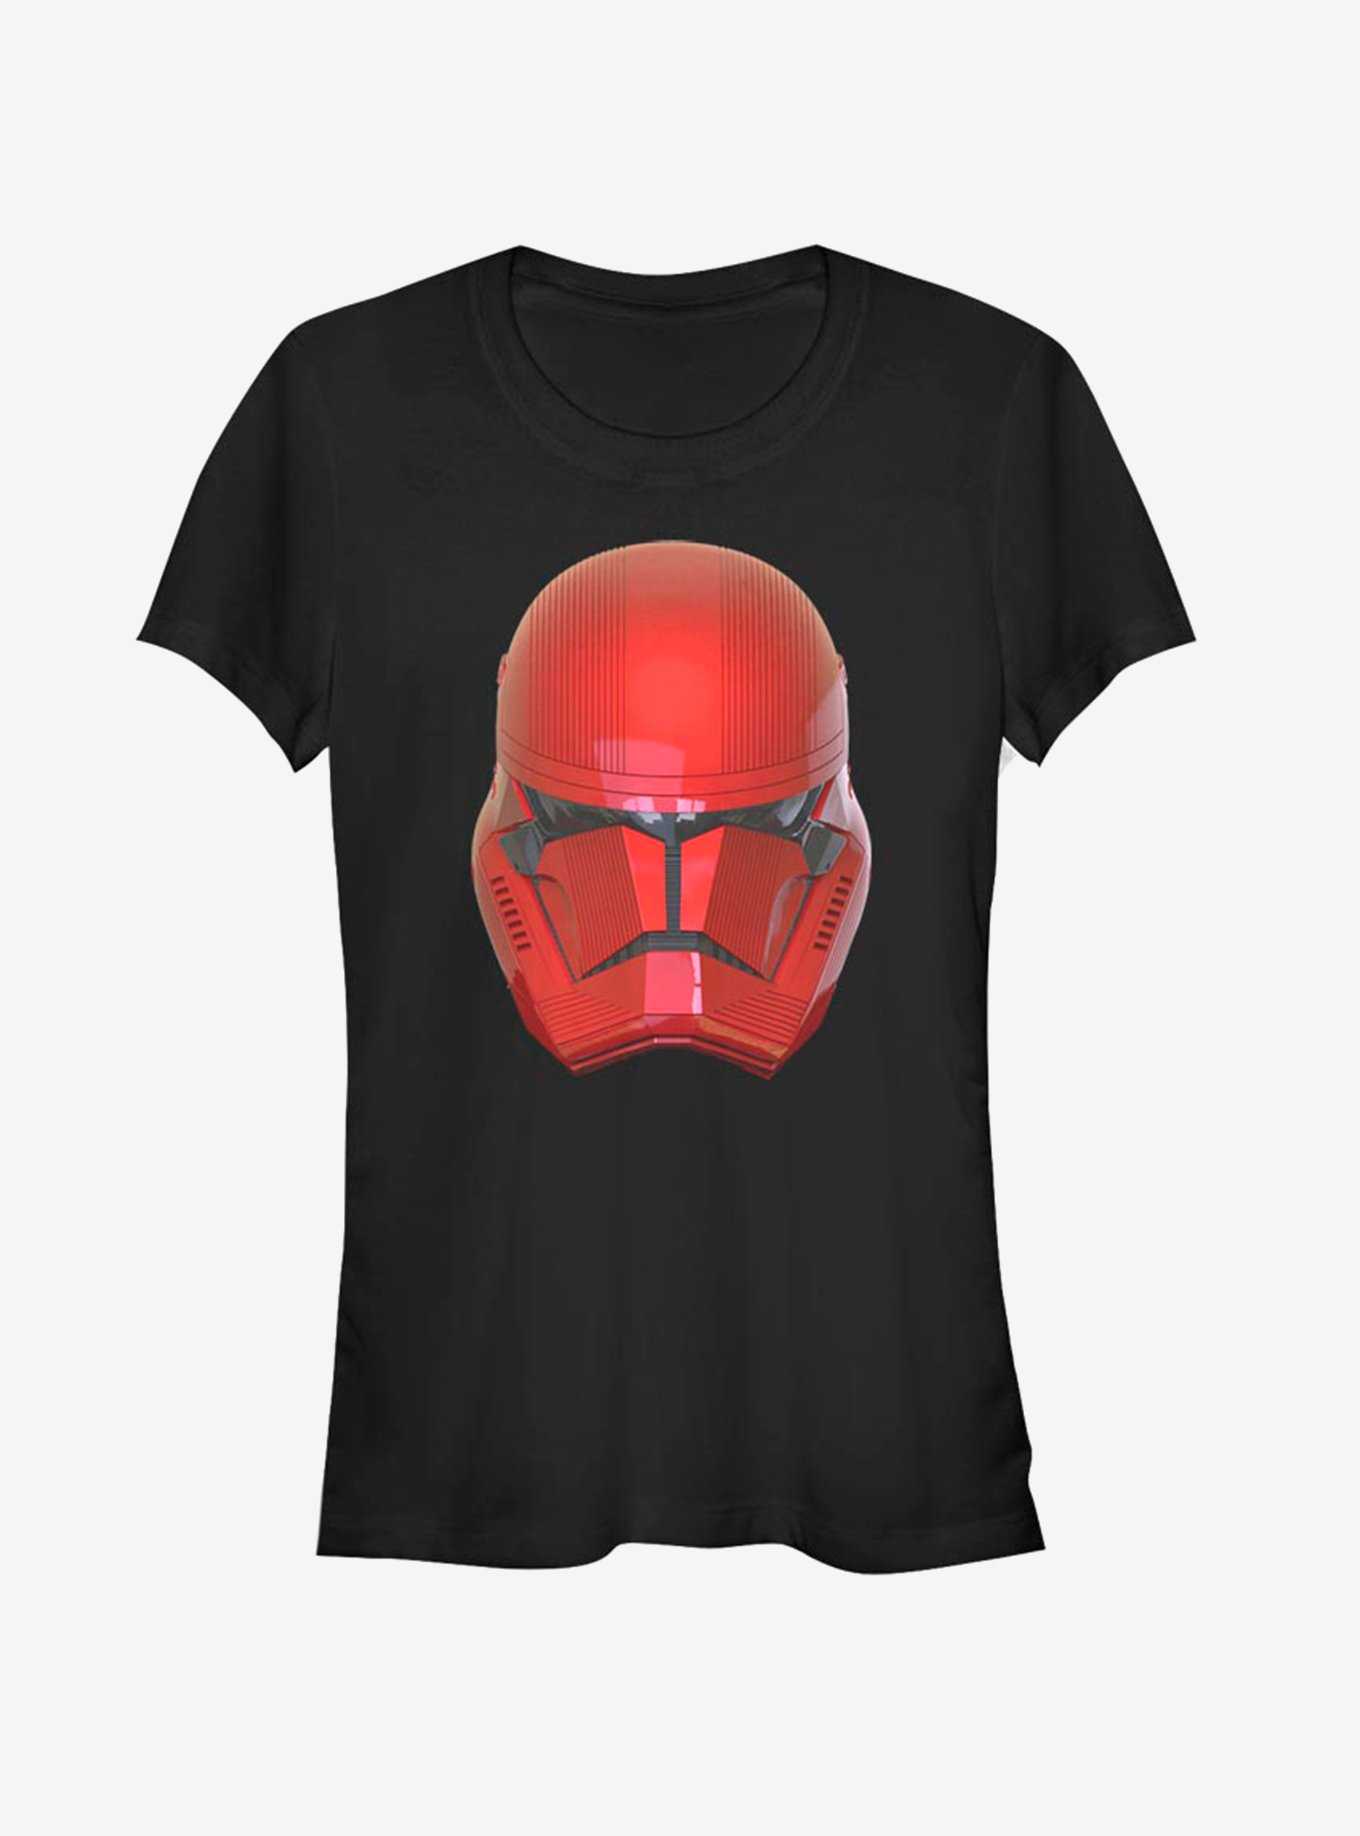 Star Wars Episode IX Rise of Skywalker Red Trooper Red Helm Girls T-Shirt, , hi-res